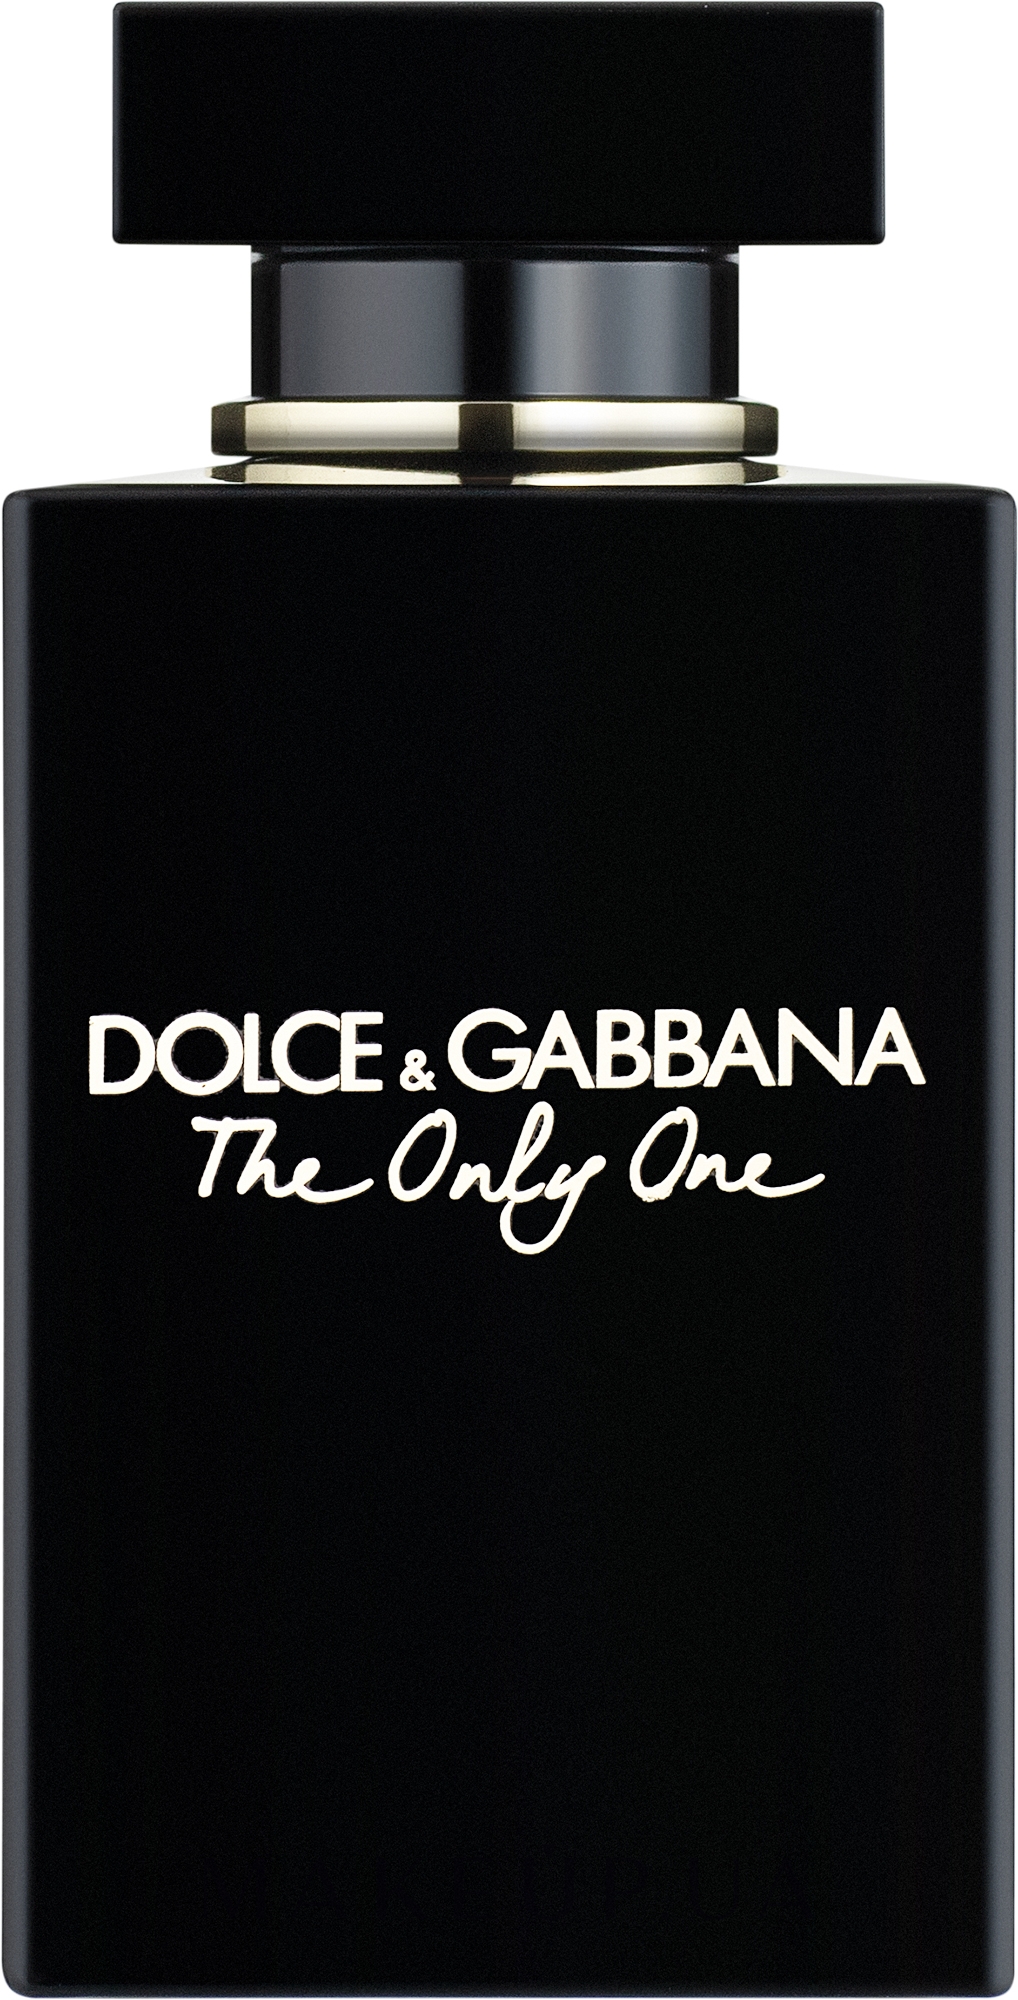 Вода дольче габбана отзывы. Dolce & Gabbana the only one, EDP., 100 ml. Dolce Gabbana the only one 30 мл. Туалетная вода Дольче Габбана the only one. Dolce Gabbana the only one Eau de Parfum.